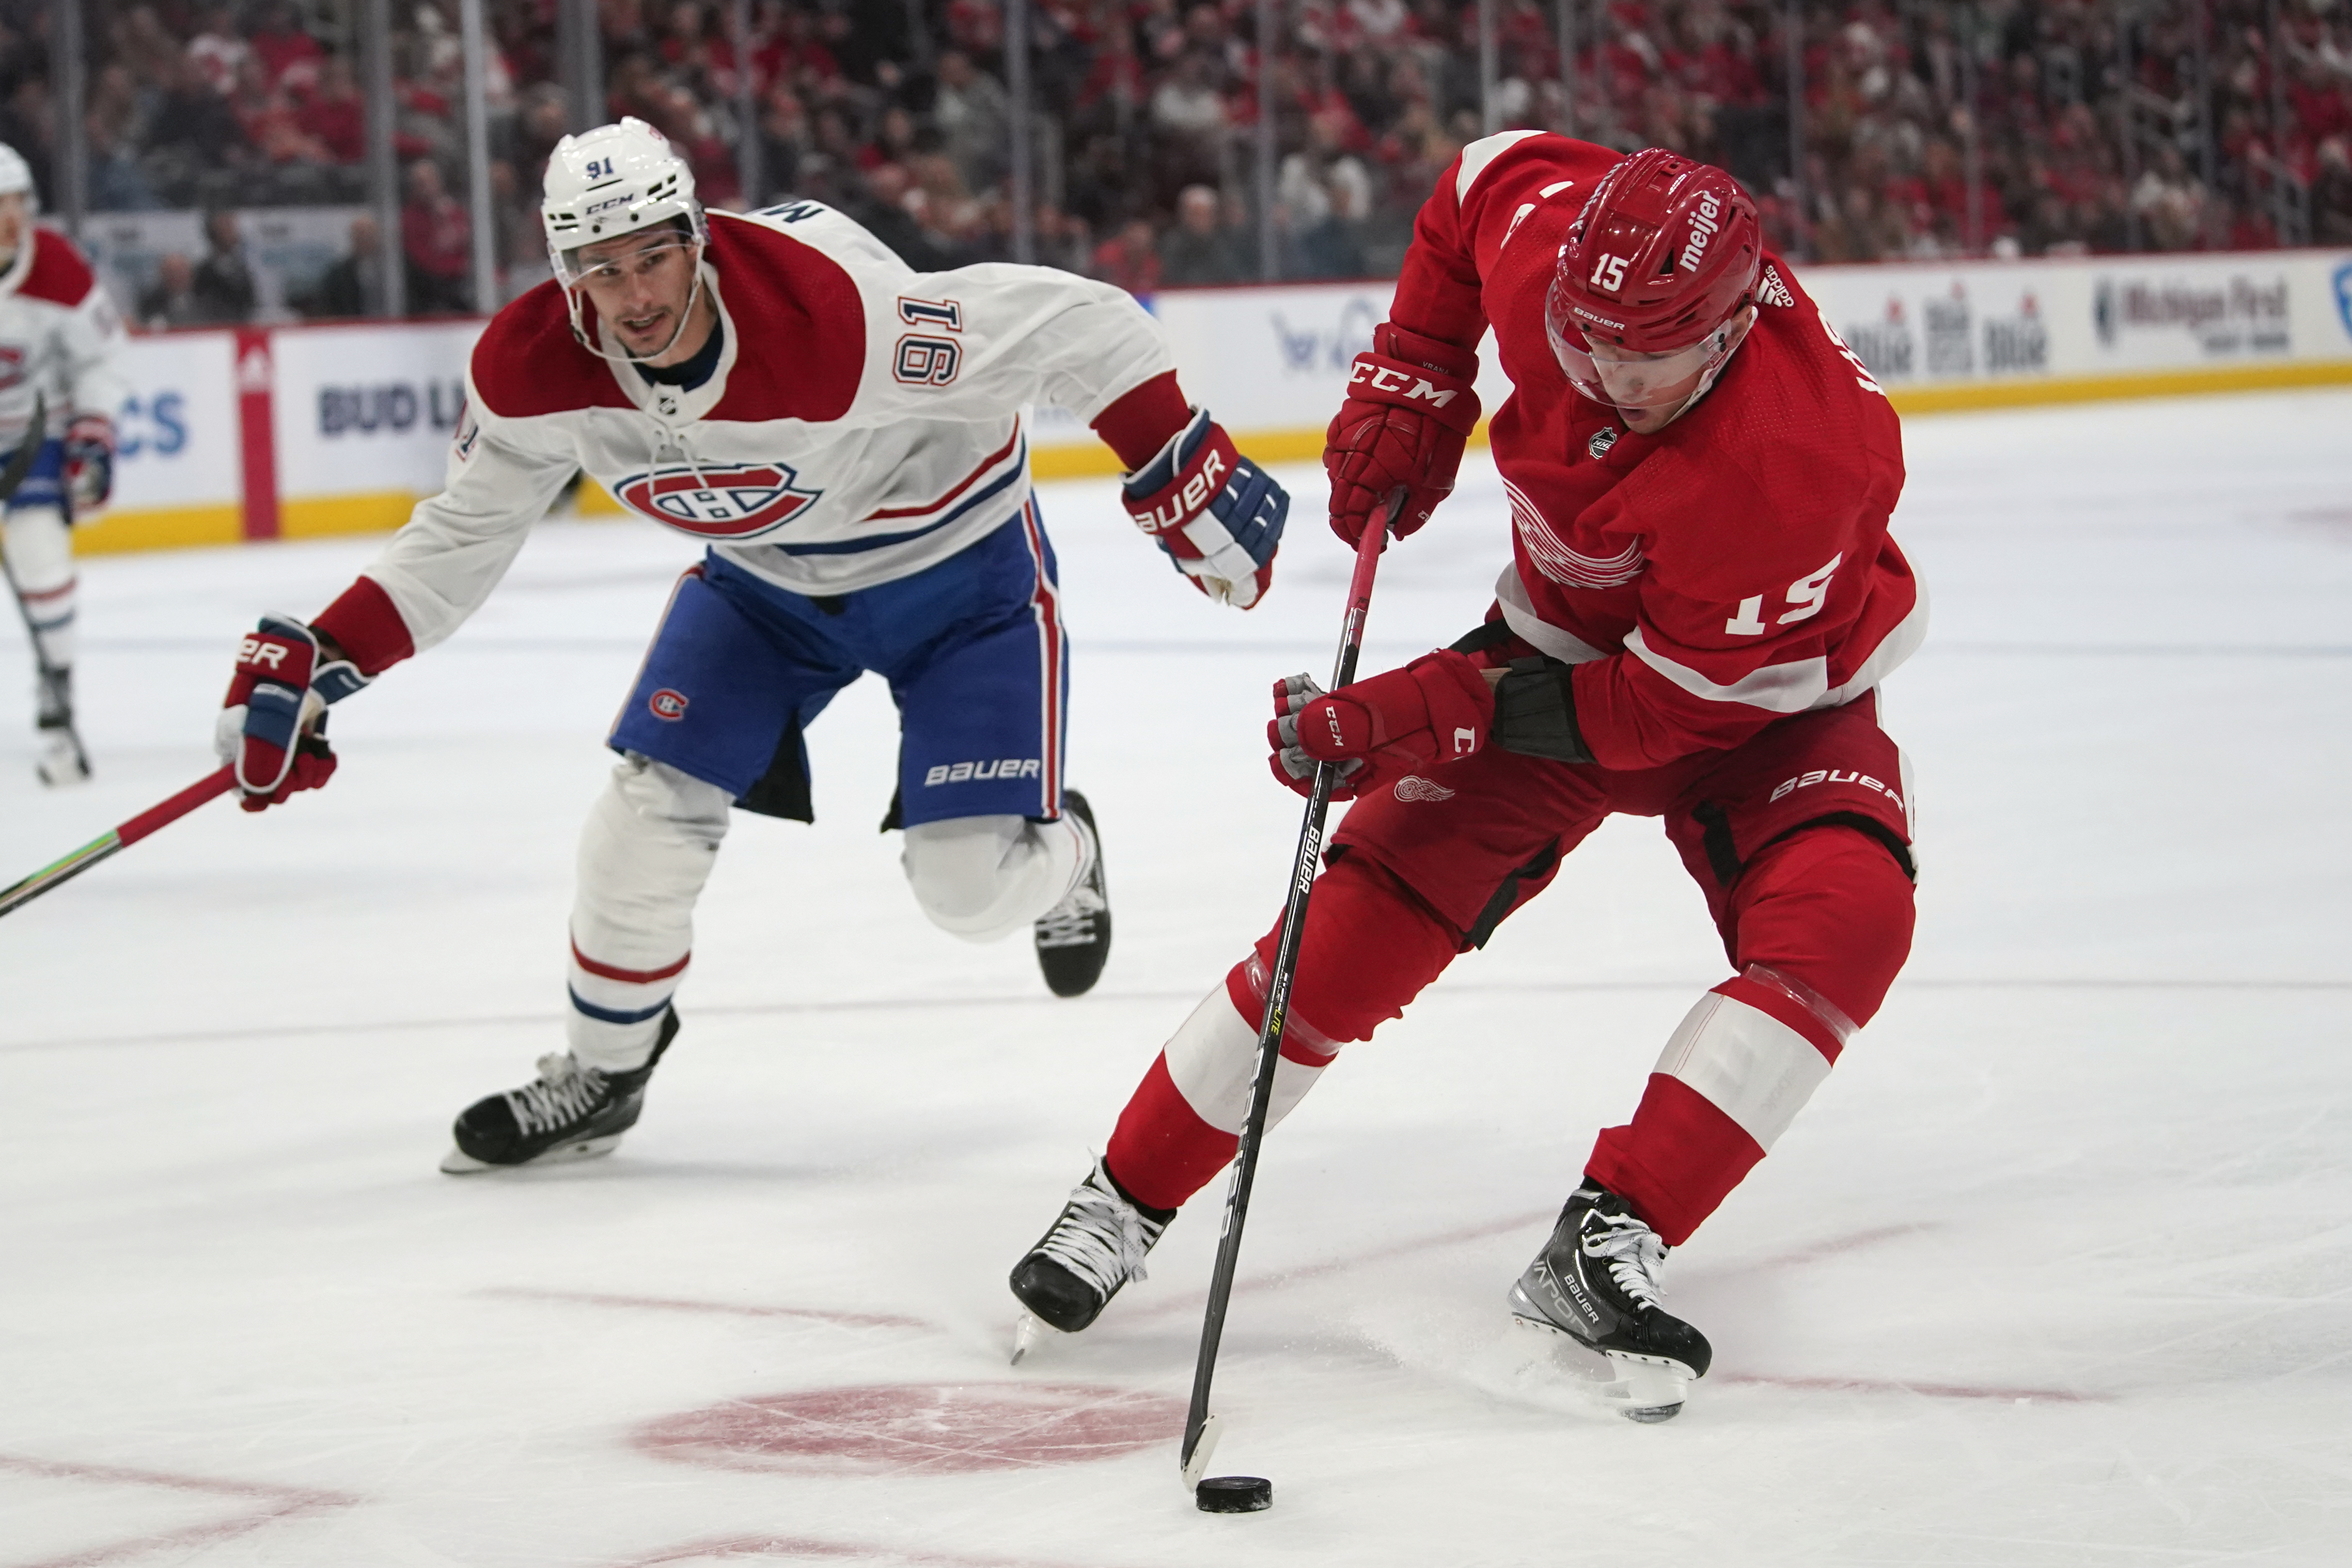 Detroit Red Wings blank Montreal Canadiens, 3-0, in season opener